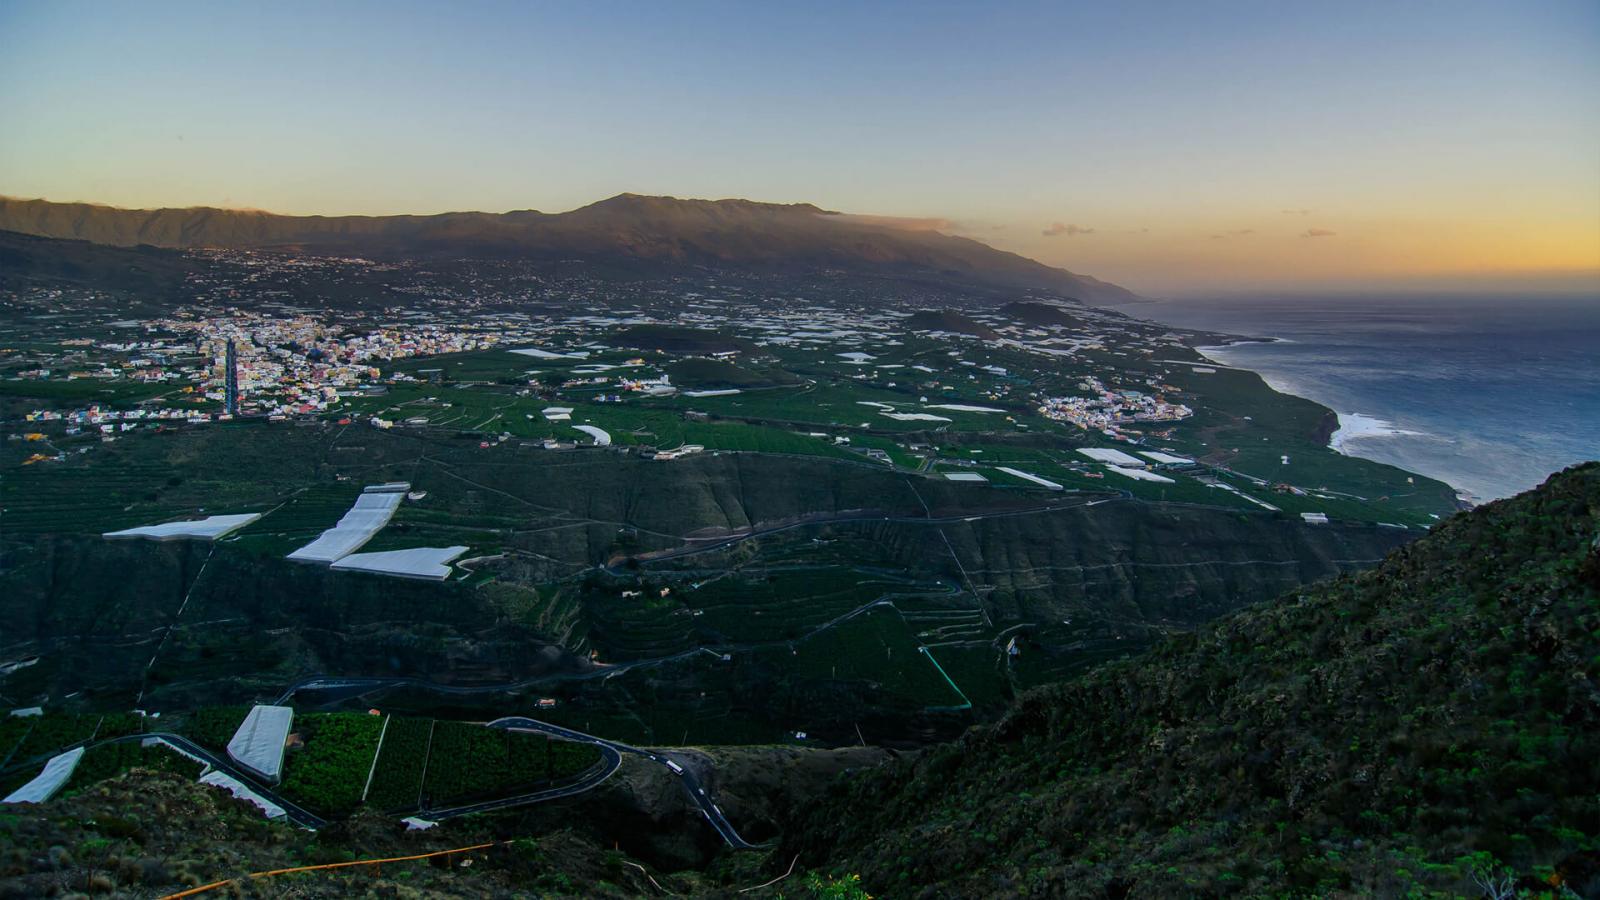 Mirador del Time, La Palma